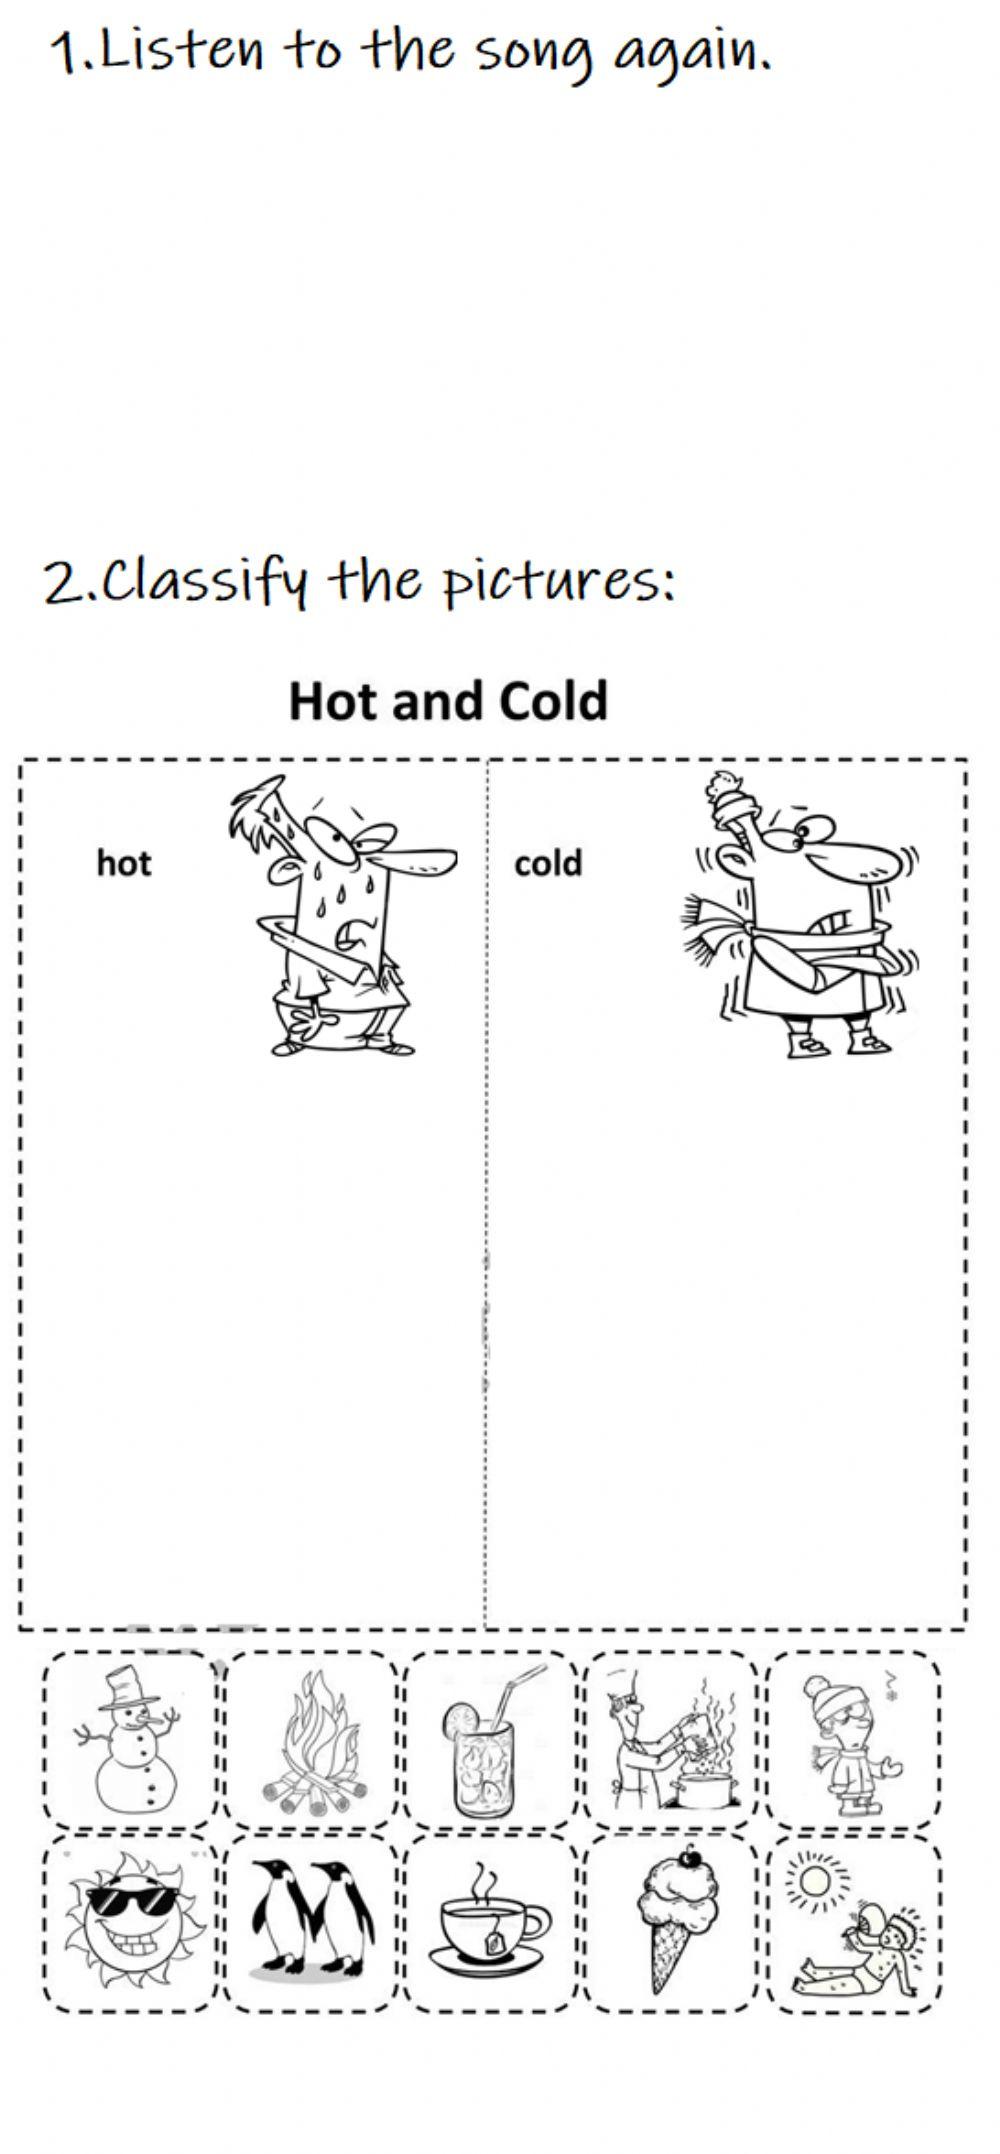 Hot vs cold